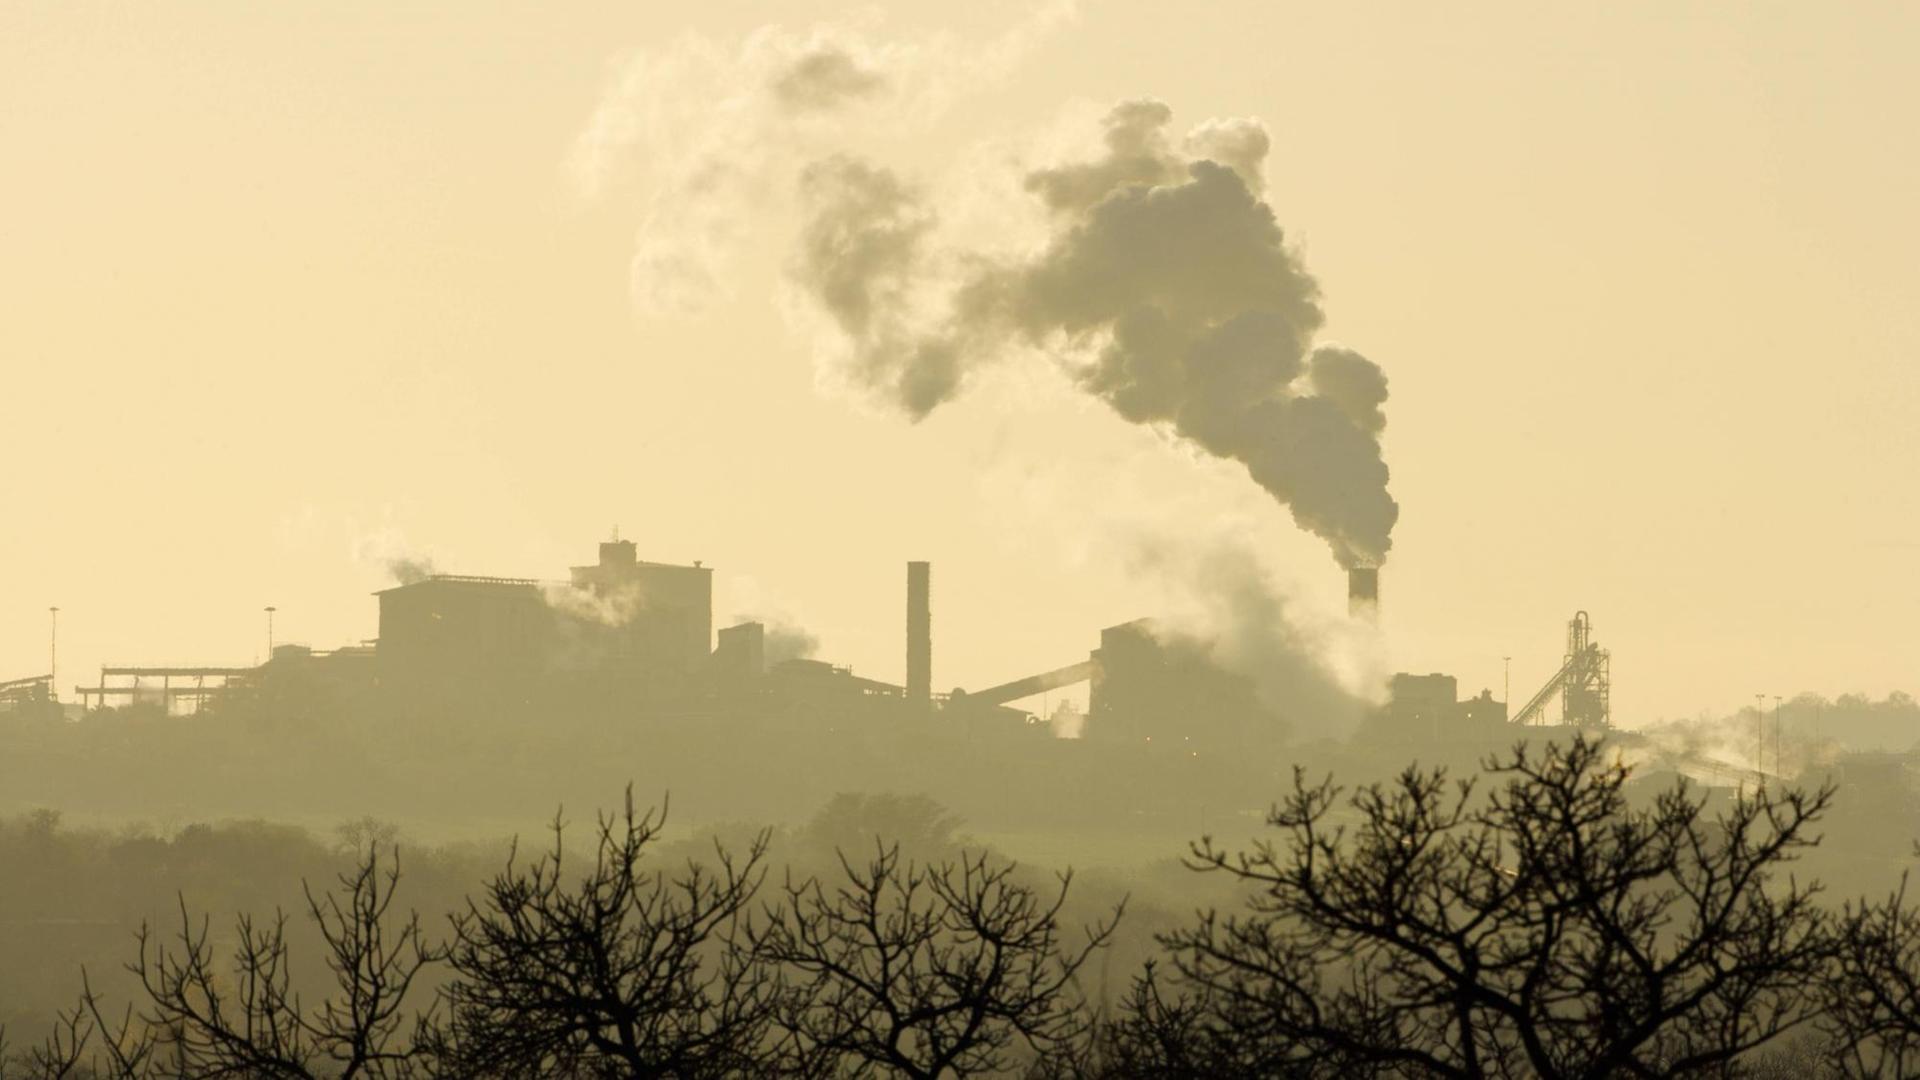 In der Ferne sieht man eine Fabrik in Südafrika mit rauchenden Schornsteinen. Im Vordergrund stehen am unteren Bildrand ein paar Bäume. Die Szene ist in ein gelbes Licht getaucht.